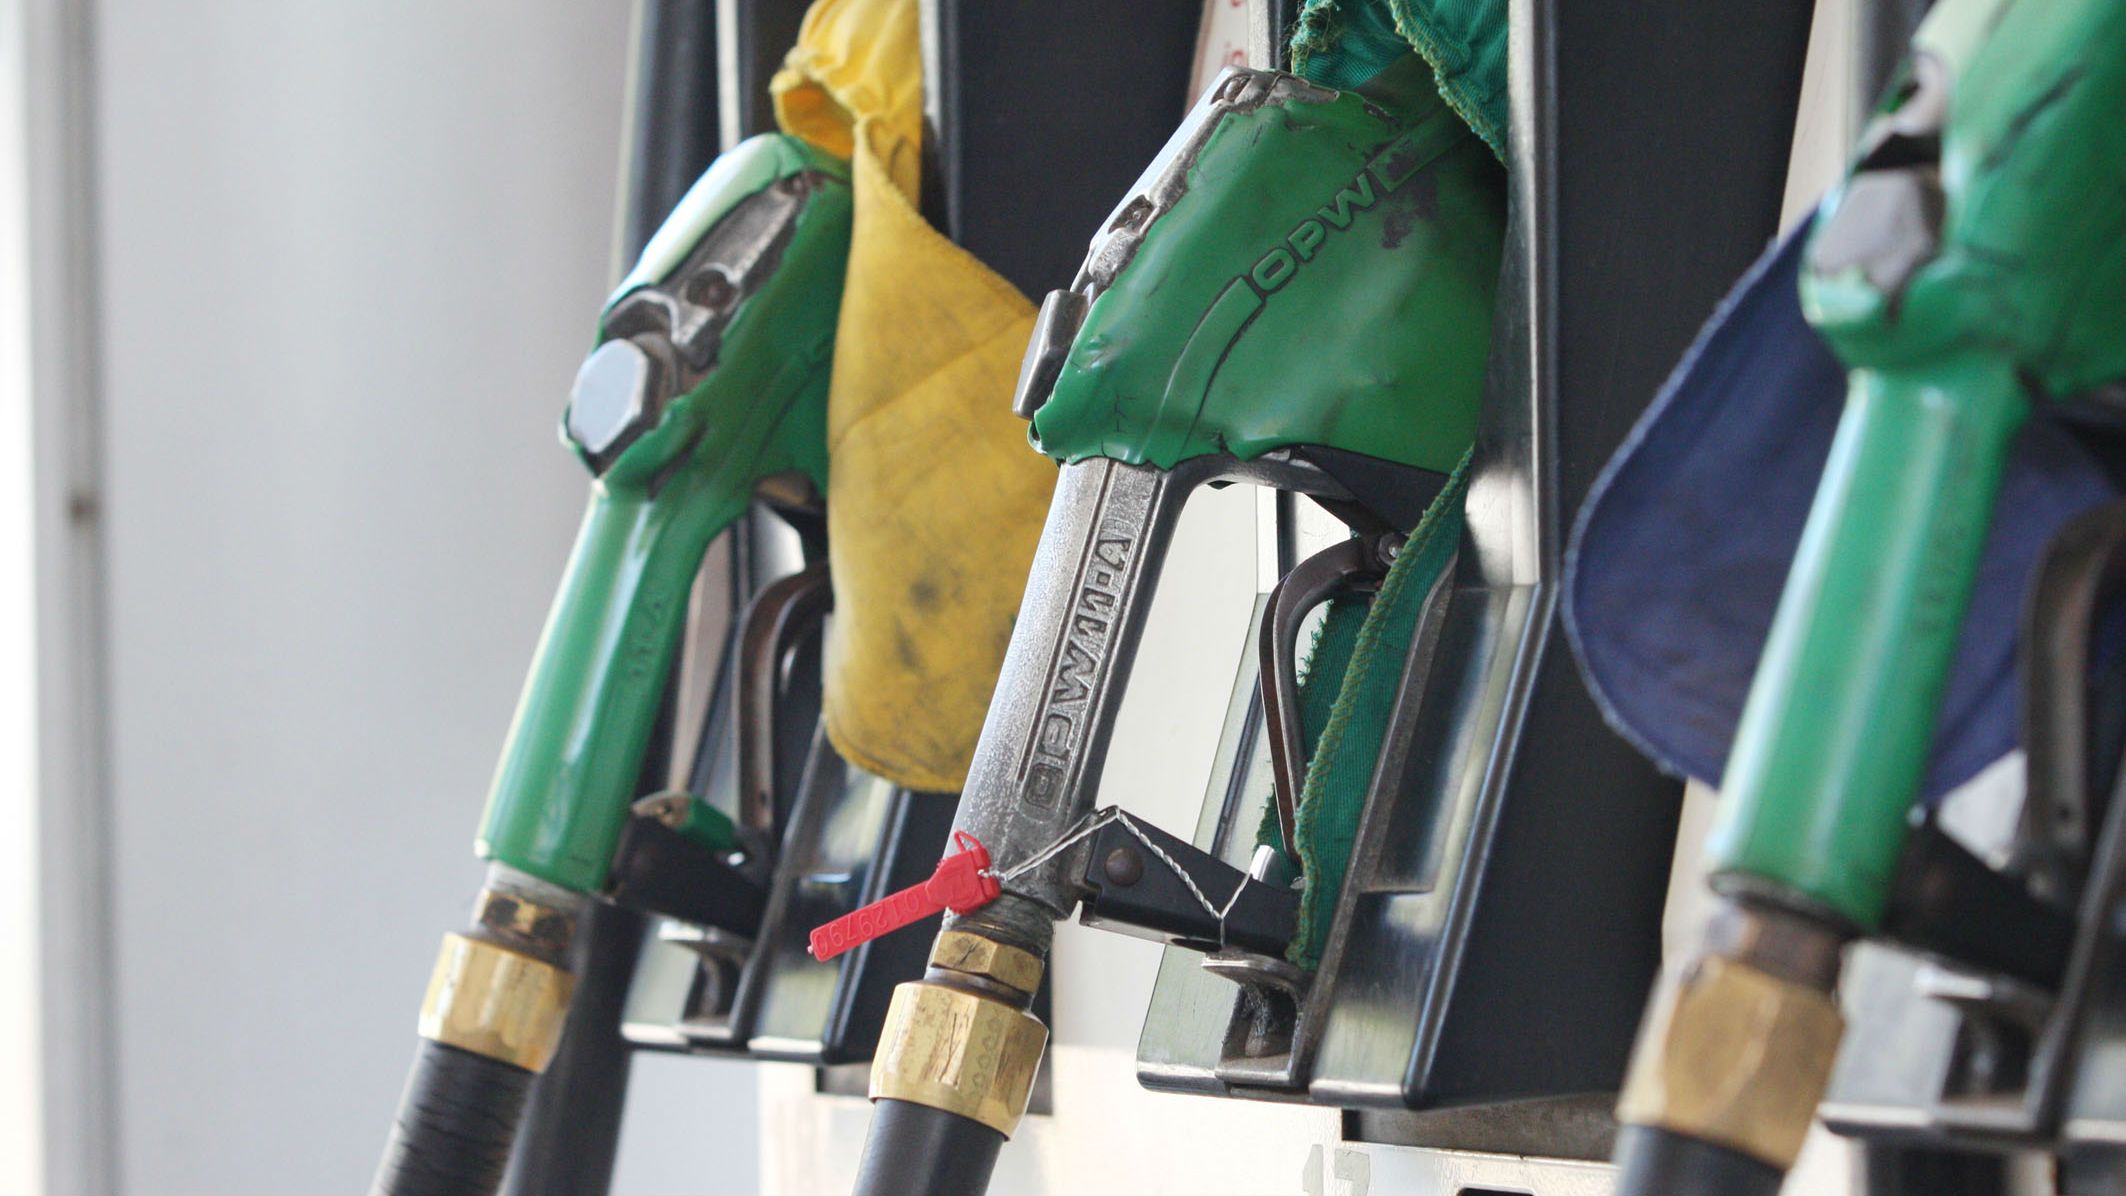 L'IPC espanyol arriba al 2,3% al juny pel preu de les gasolines